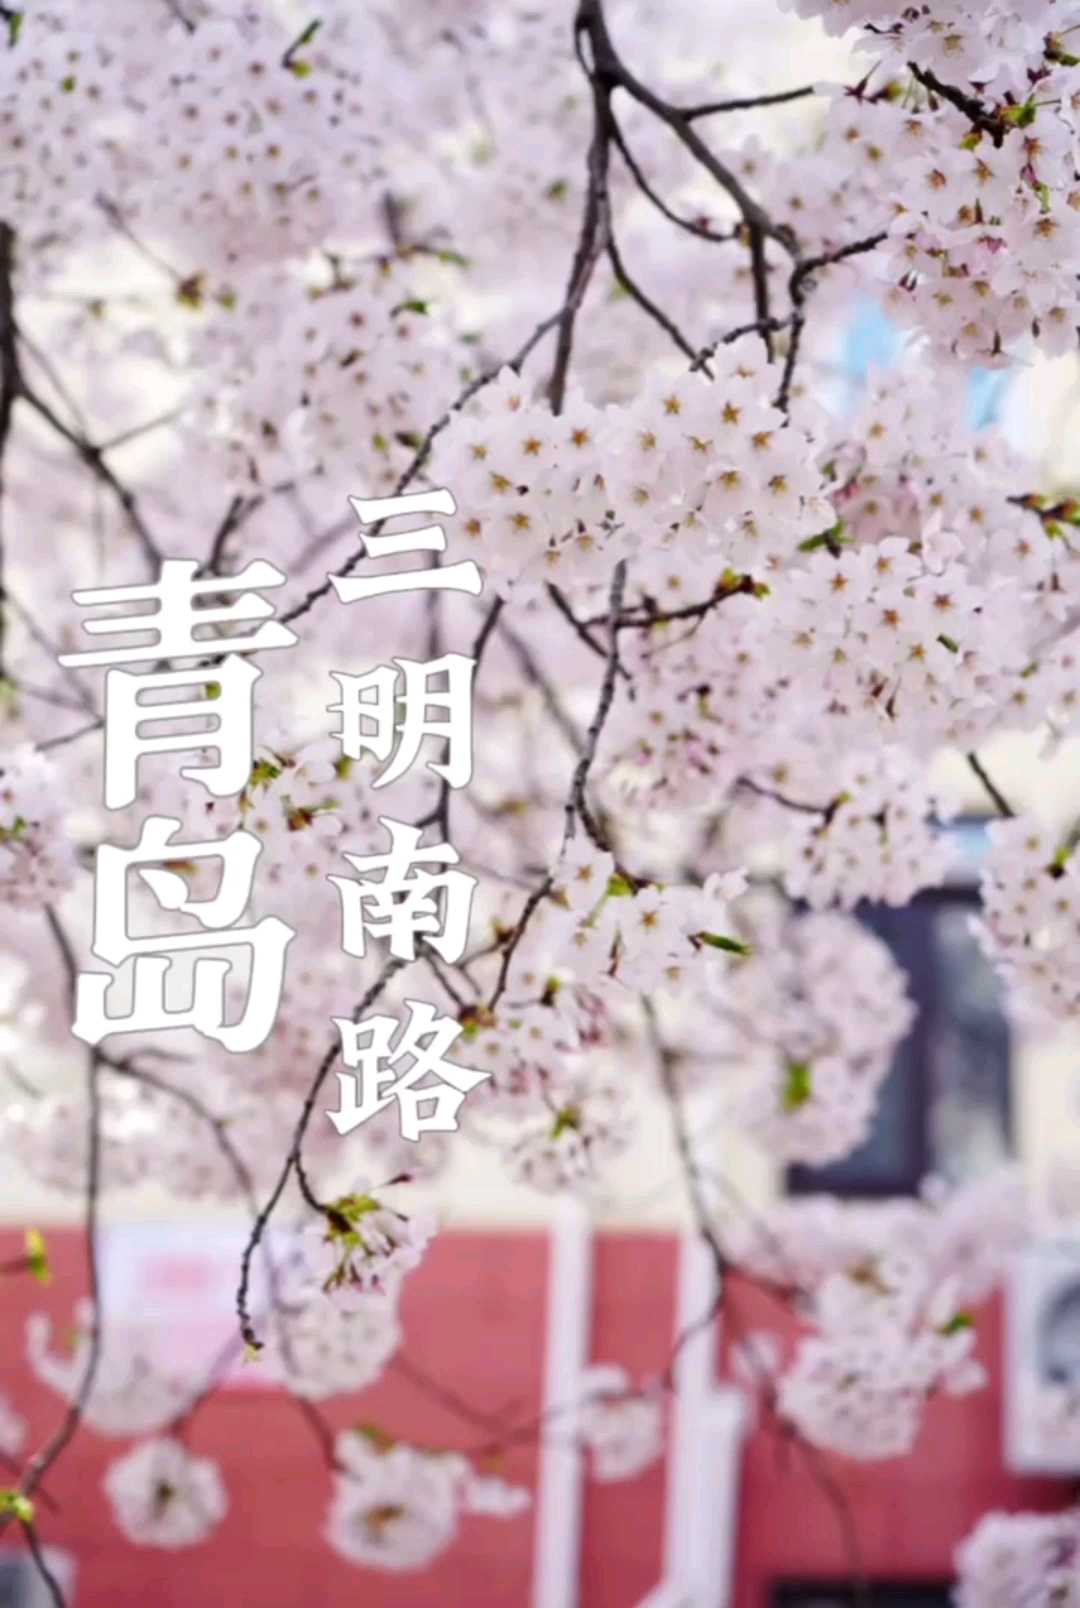 青岛旅游樱花盛开季节三明南路的樱花开了